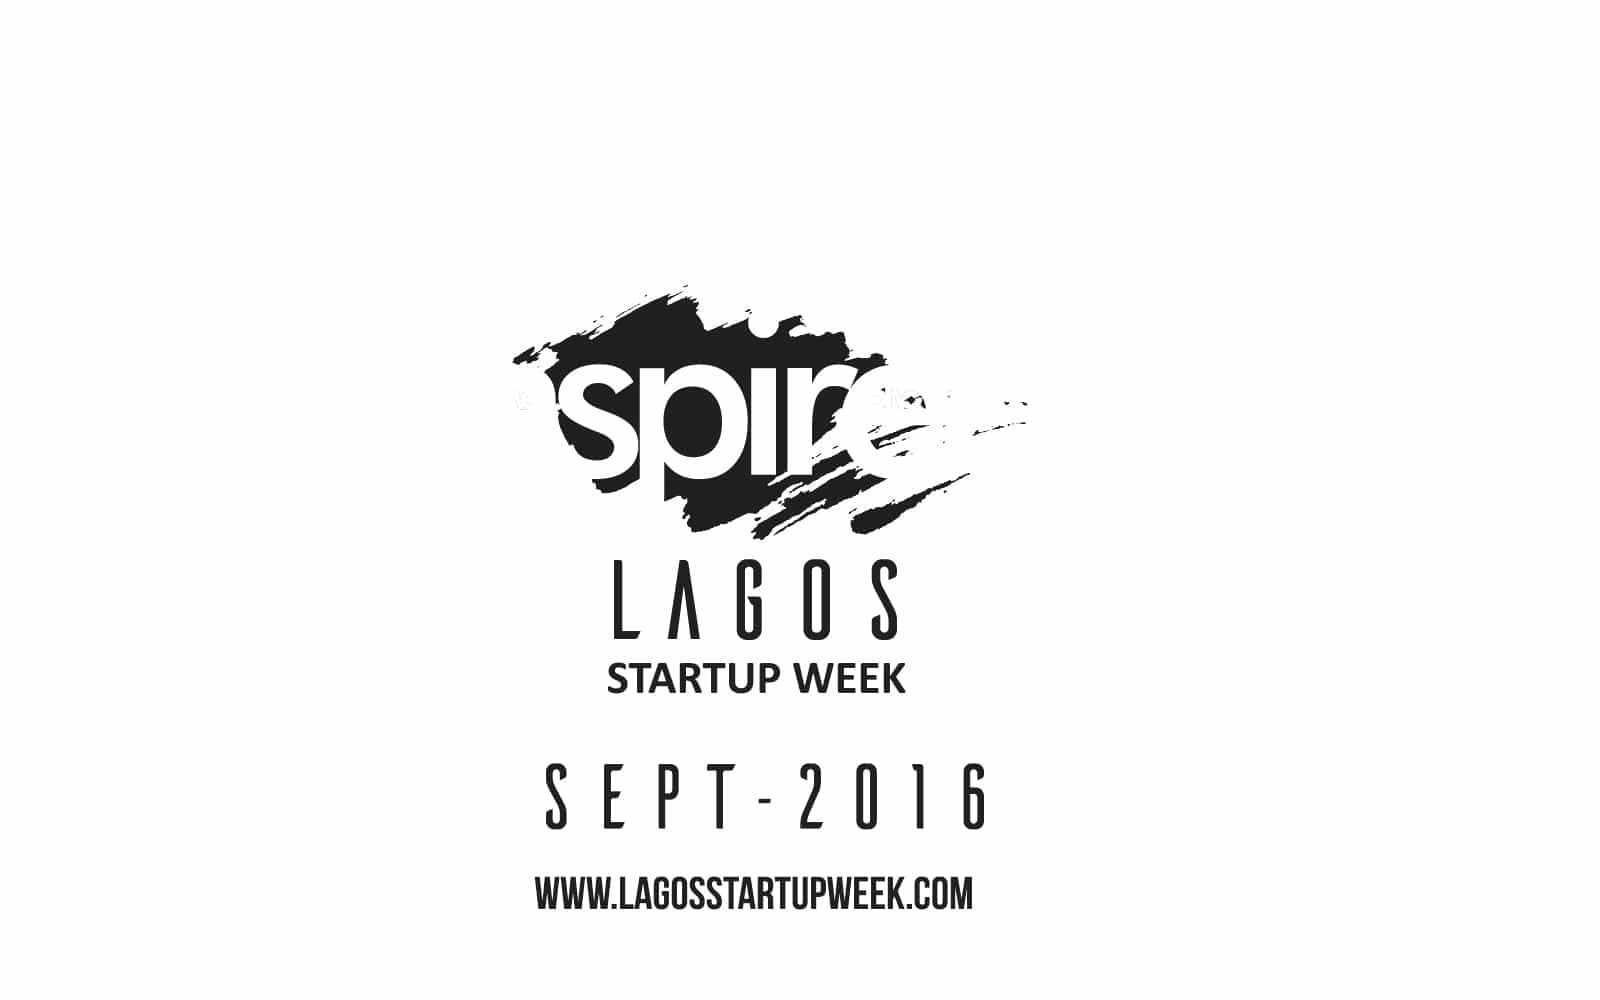 Lagos Startup week, Startup week